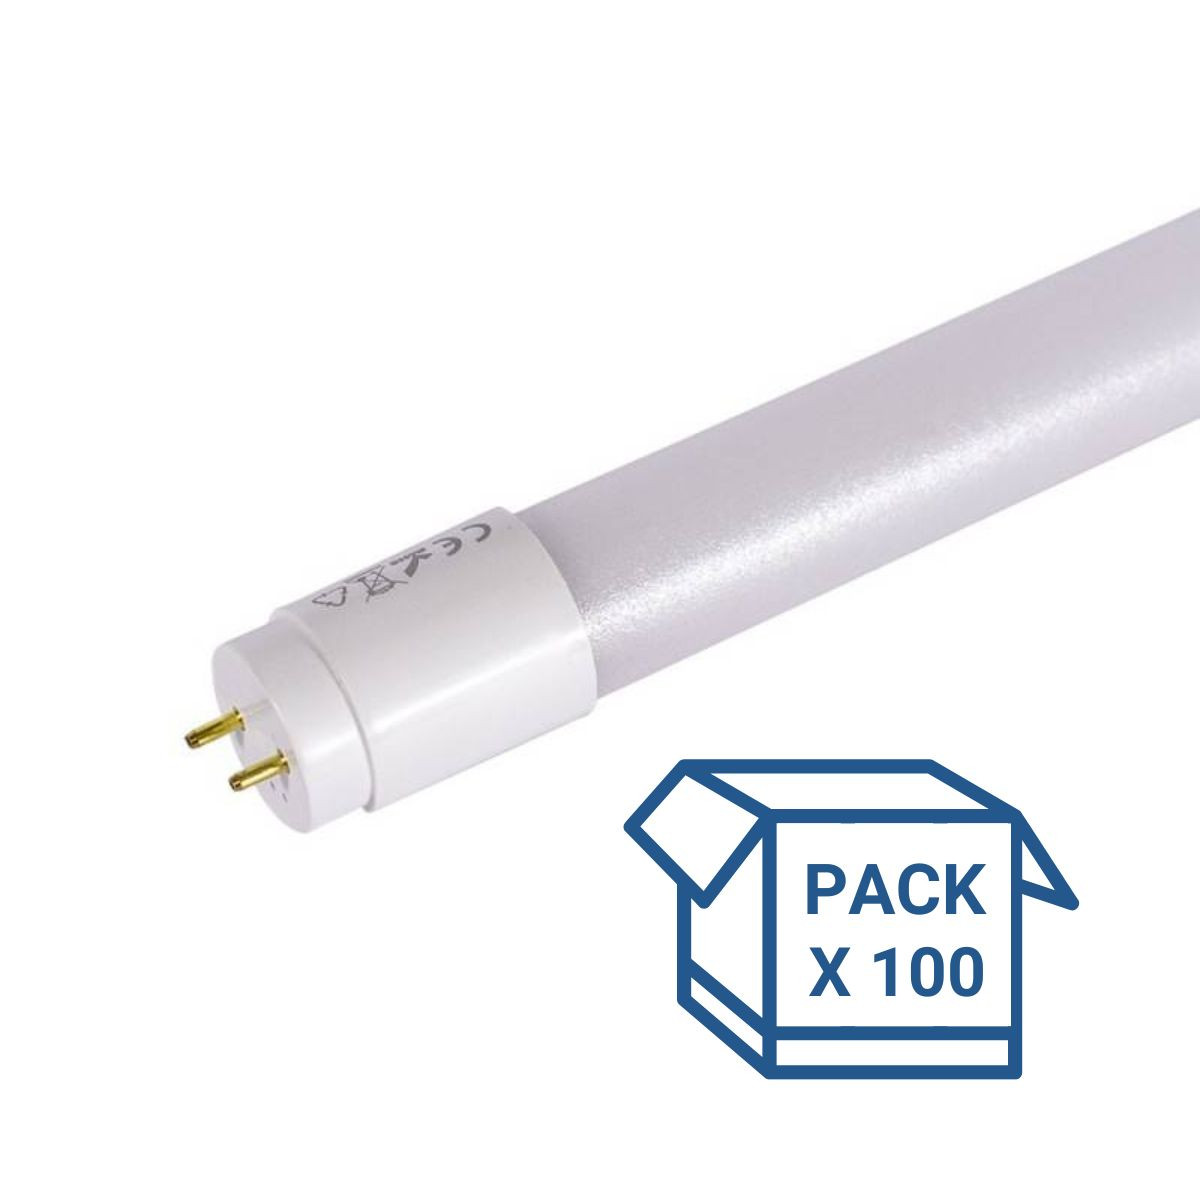 Pack x 100 - Tubo LED 120cm T8 - 18W - 140lm/W